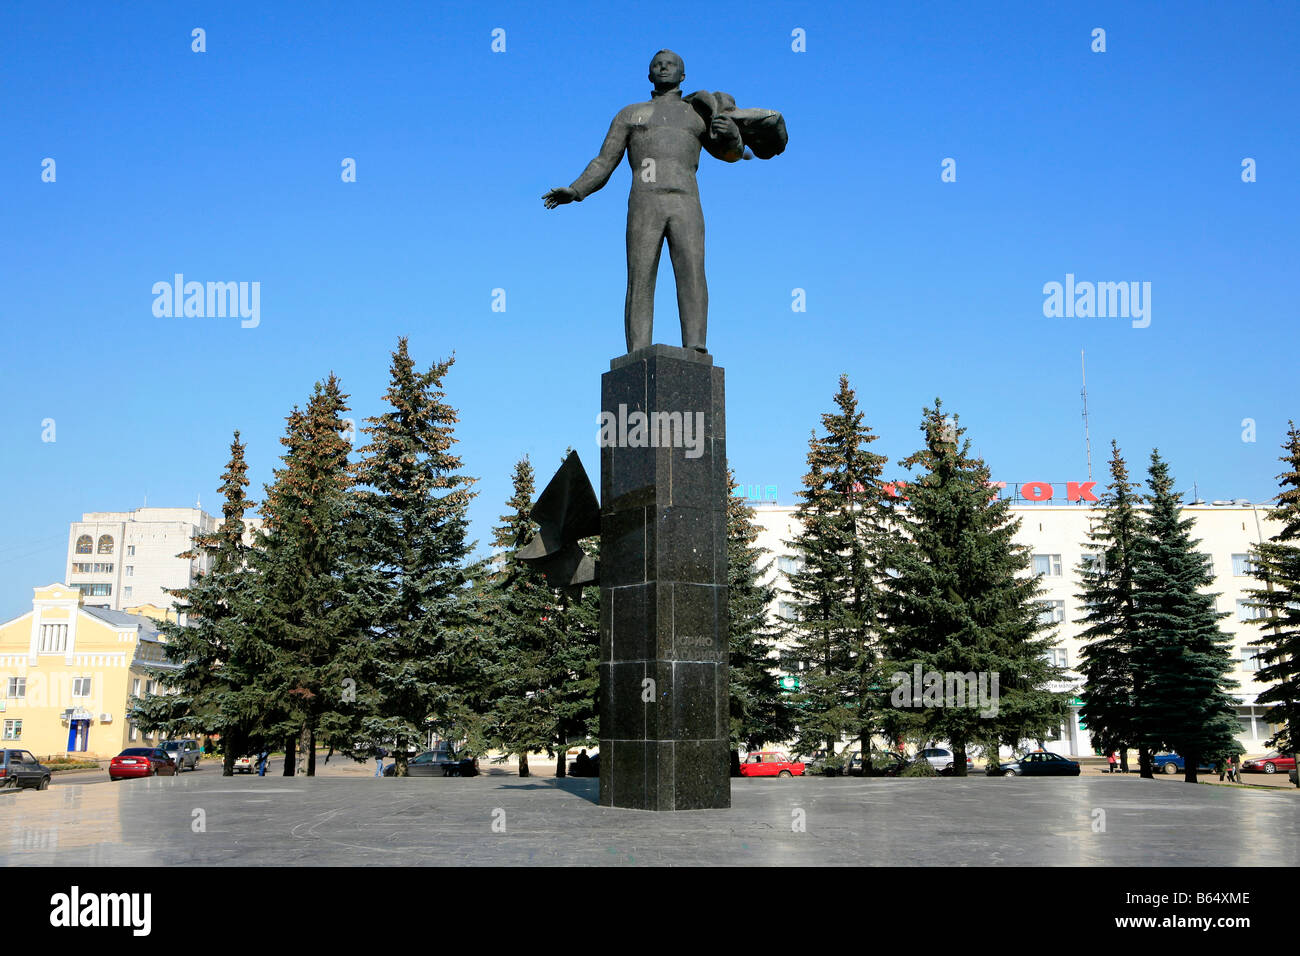 Statue de la première dans l'espace humain le cosmonaute Youri Gagarine à la place principale de 3068 (anciennement Klushino), Russie Banque D'Images